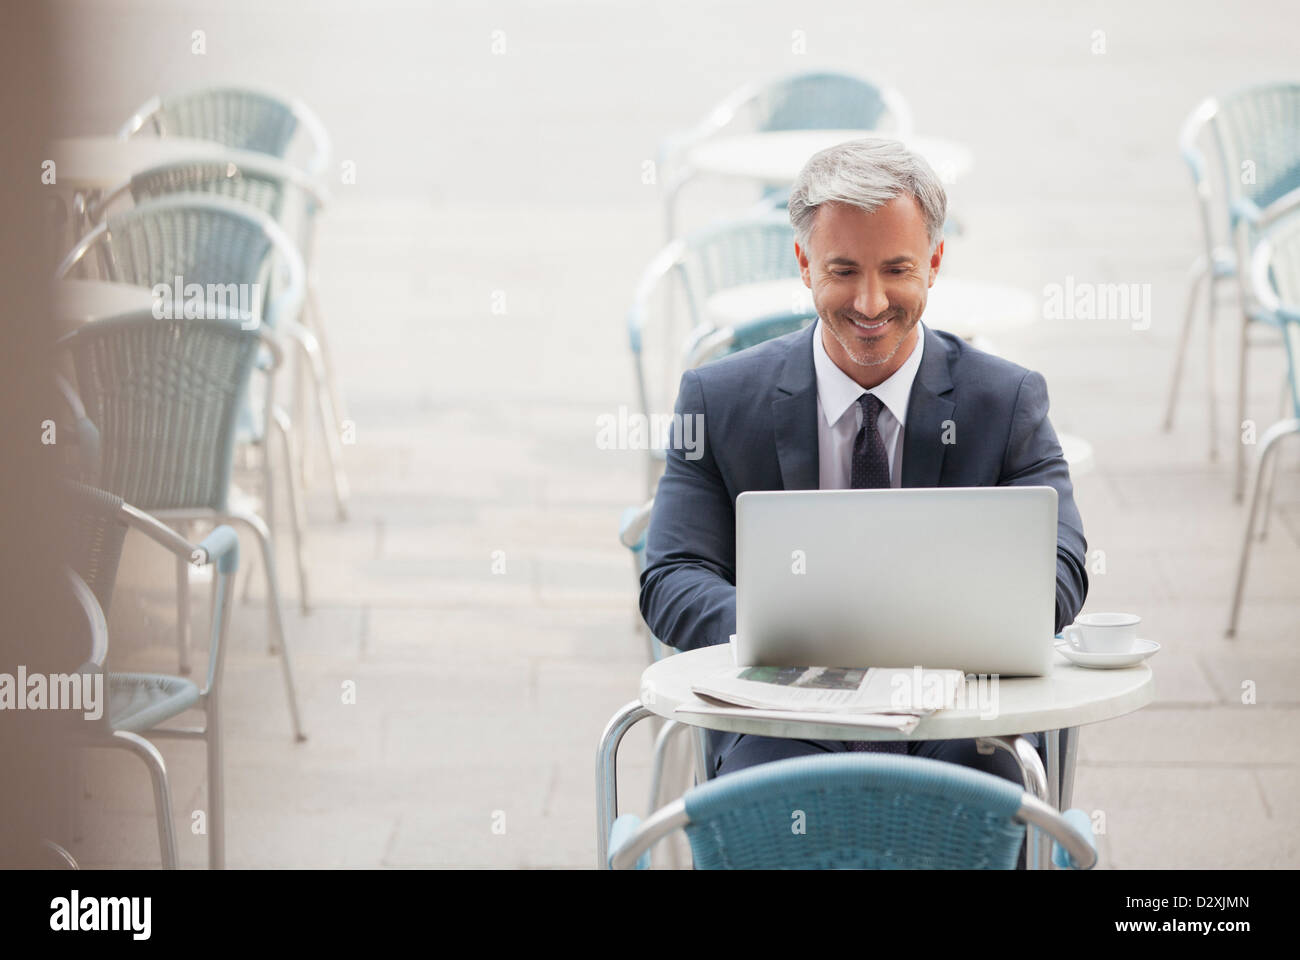 Smiling businessman using laptop at sidewalk cafe Banque D'Images